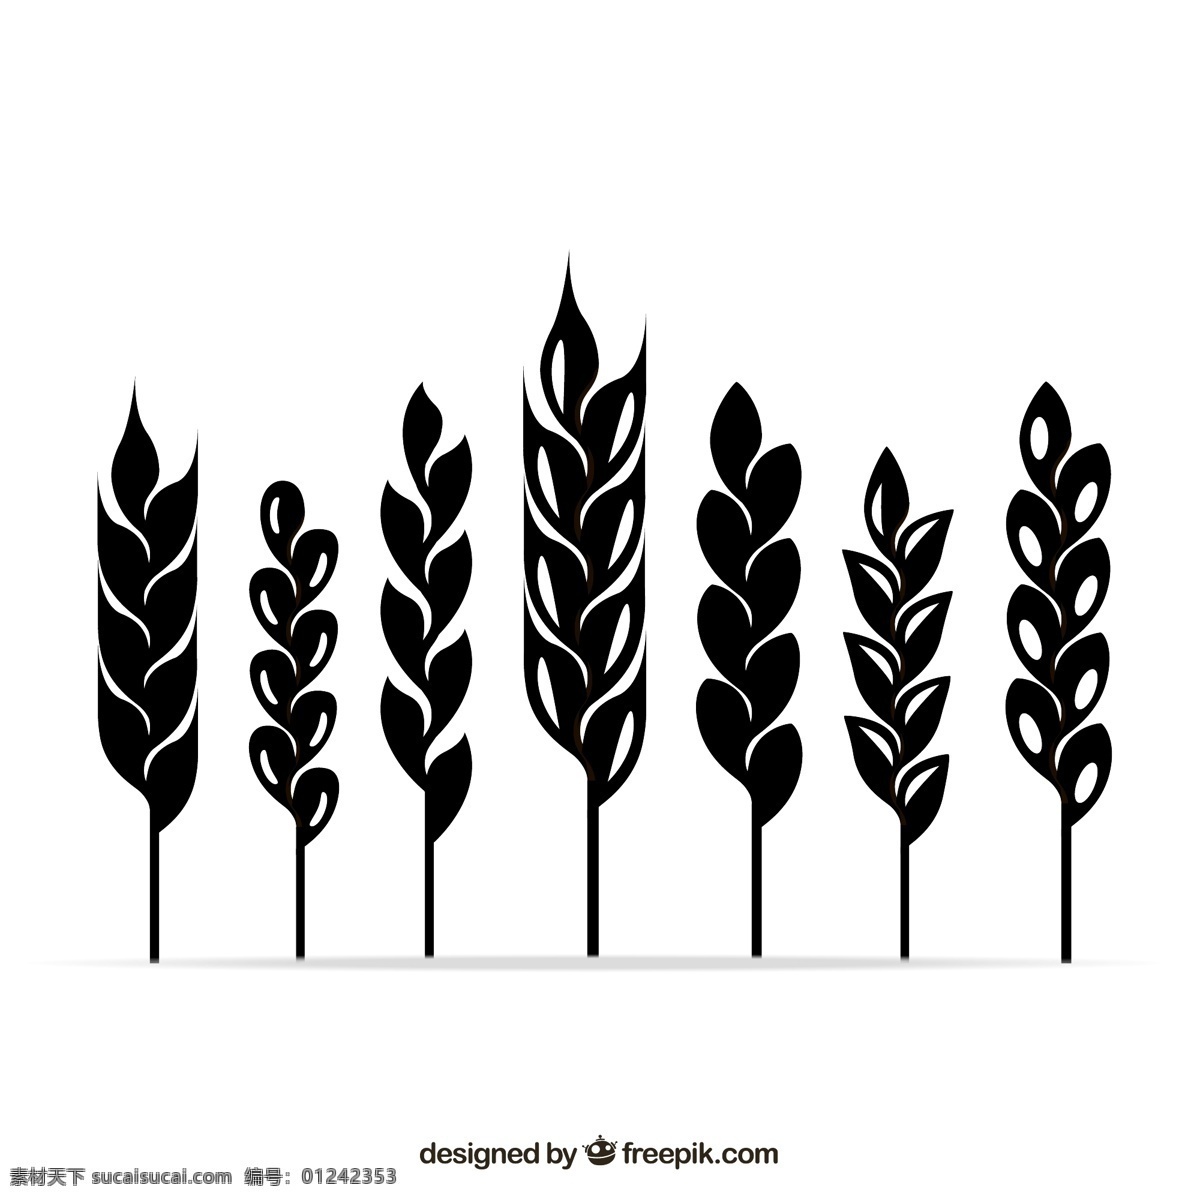 麦穗 剪影 矢量 植物 农作物 收获 秋 小麦 矢量图